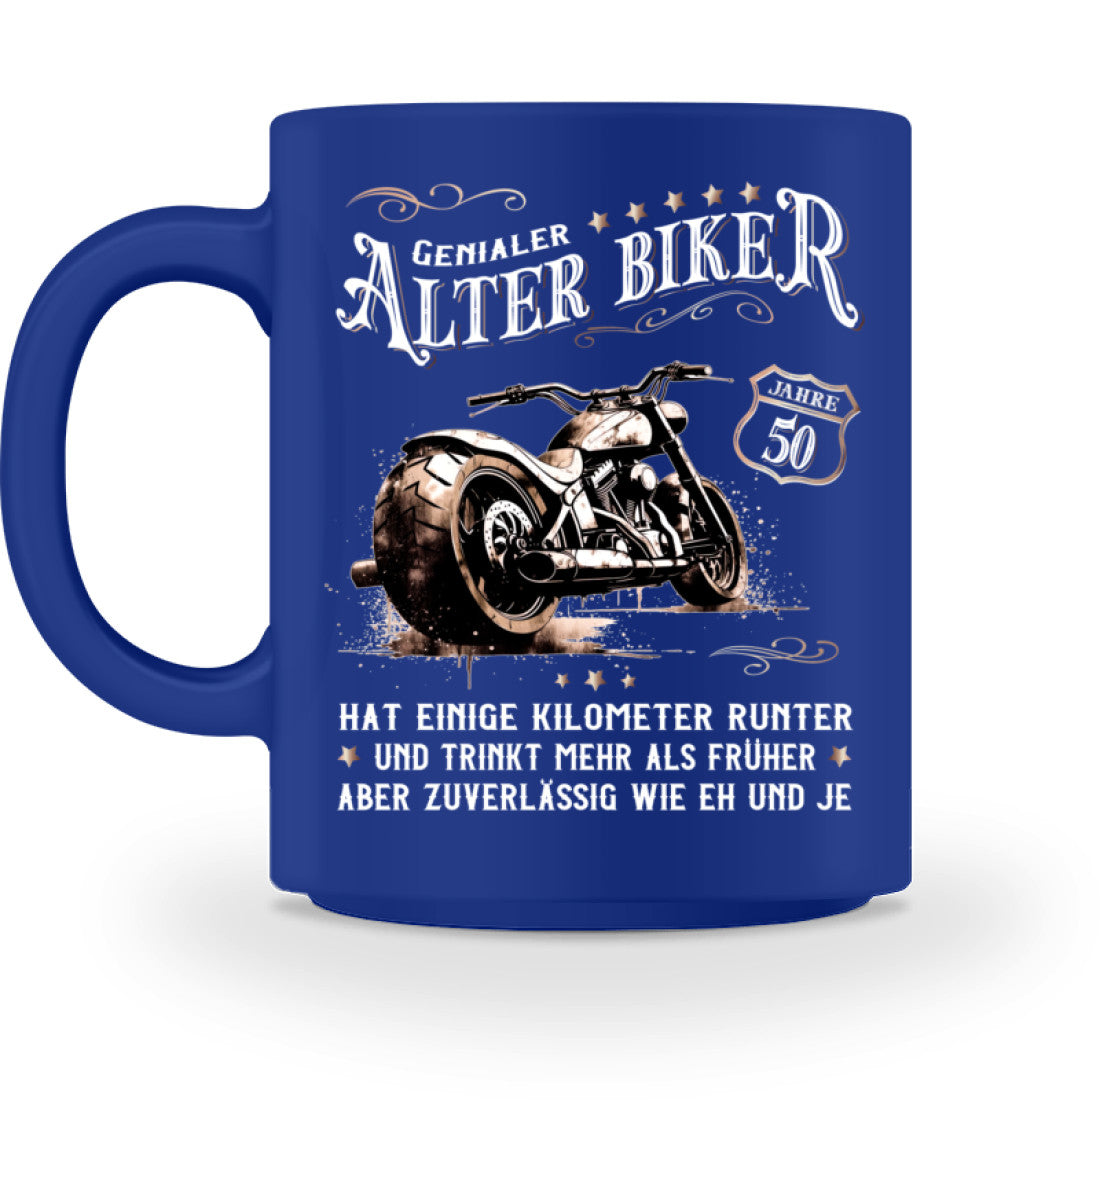 Eine Biker  Geburtstags-Tasse für Motorradfahrer, von Wingbikers, mit dem beidseitigen Aufdruck, Alter Biker - 50 Jahre - Einige Kilometer runter, trinkt mehr - aber zuverlässig wie eh und je, in blau.